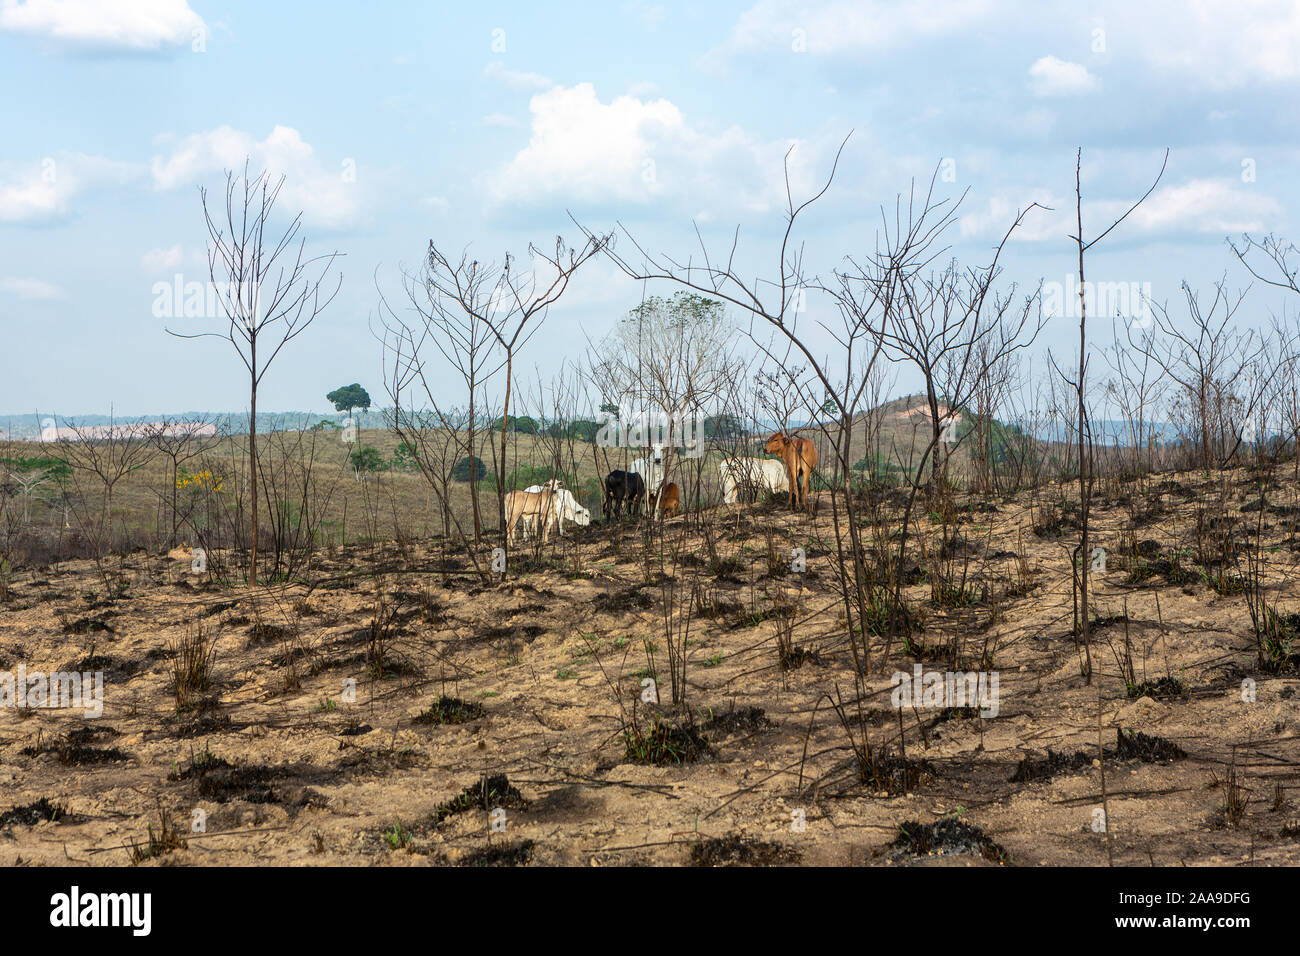 Gruppe von Zebu Kälbern weiden in Viehzucht Weide und verbrannten Bäume, nach Entwaldung des Amazonas-Regenwald. Umwelt, Landwirtschaftskonzept. Stockfoto